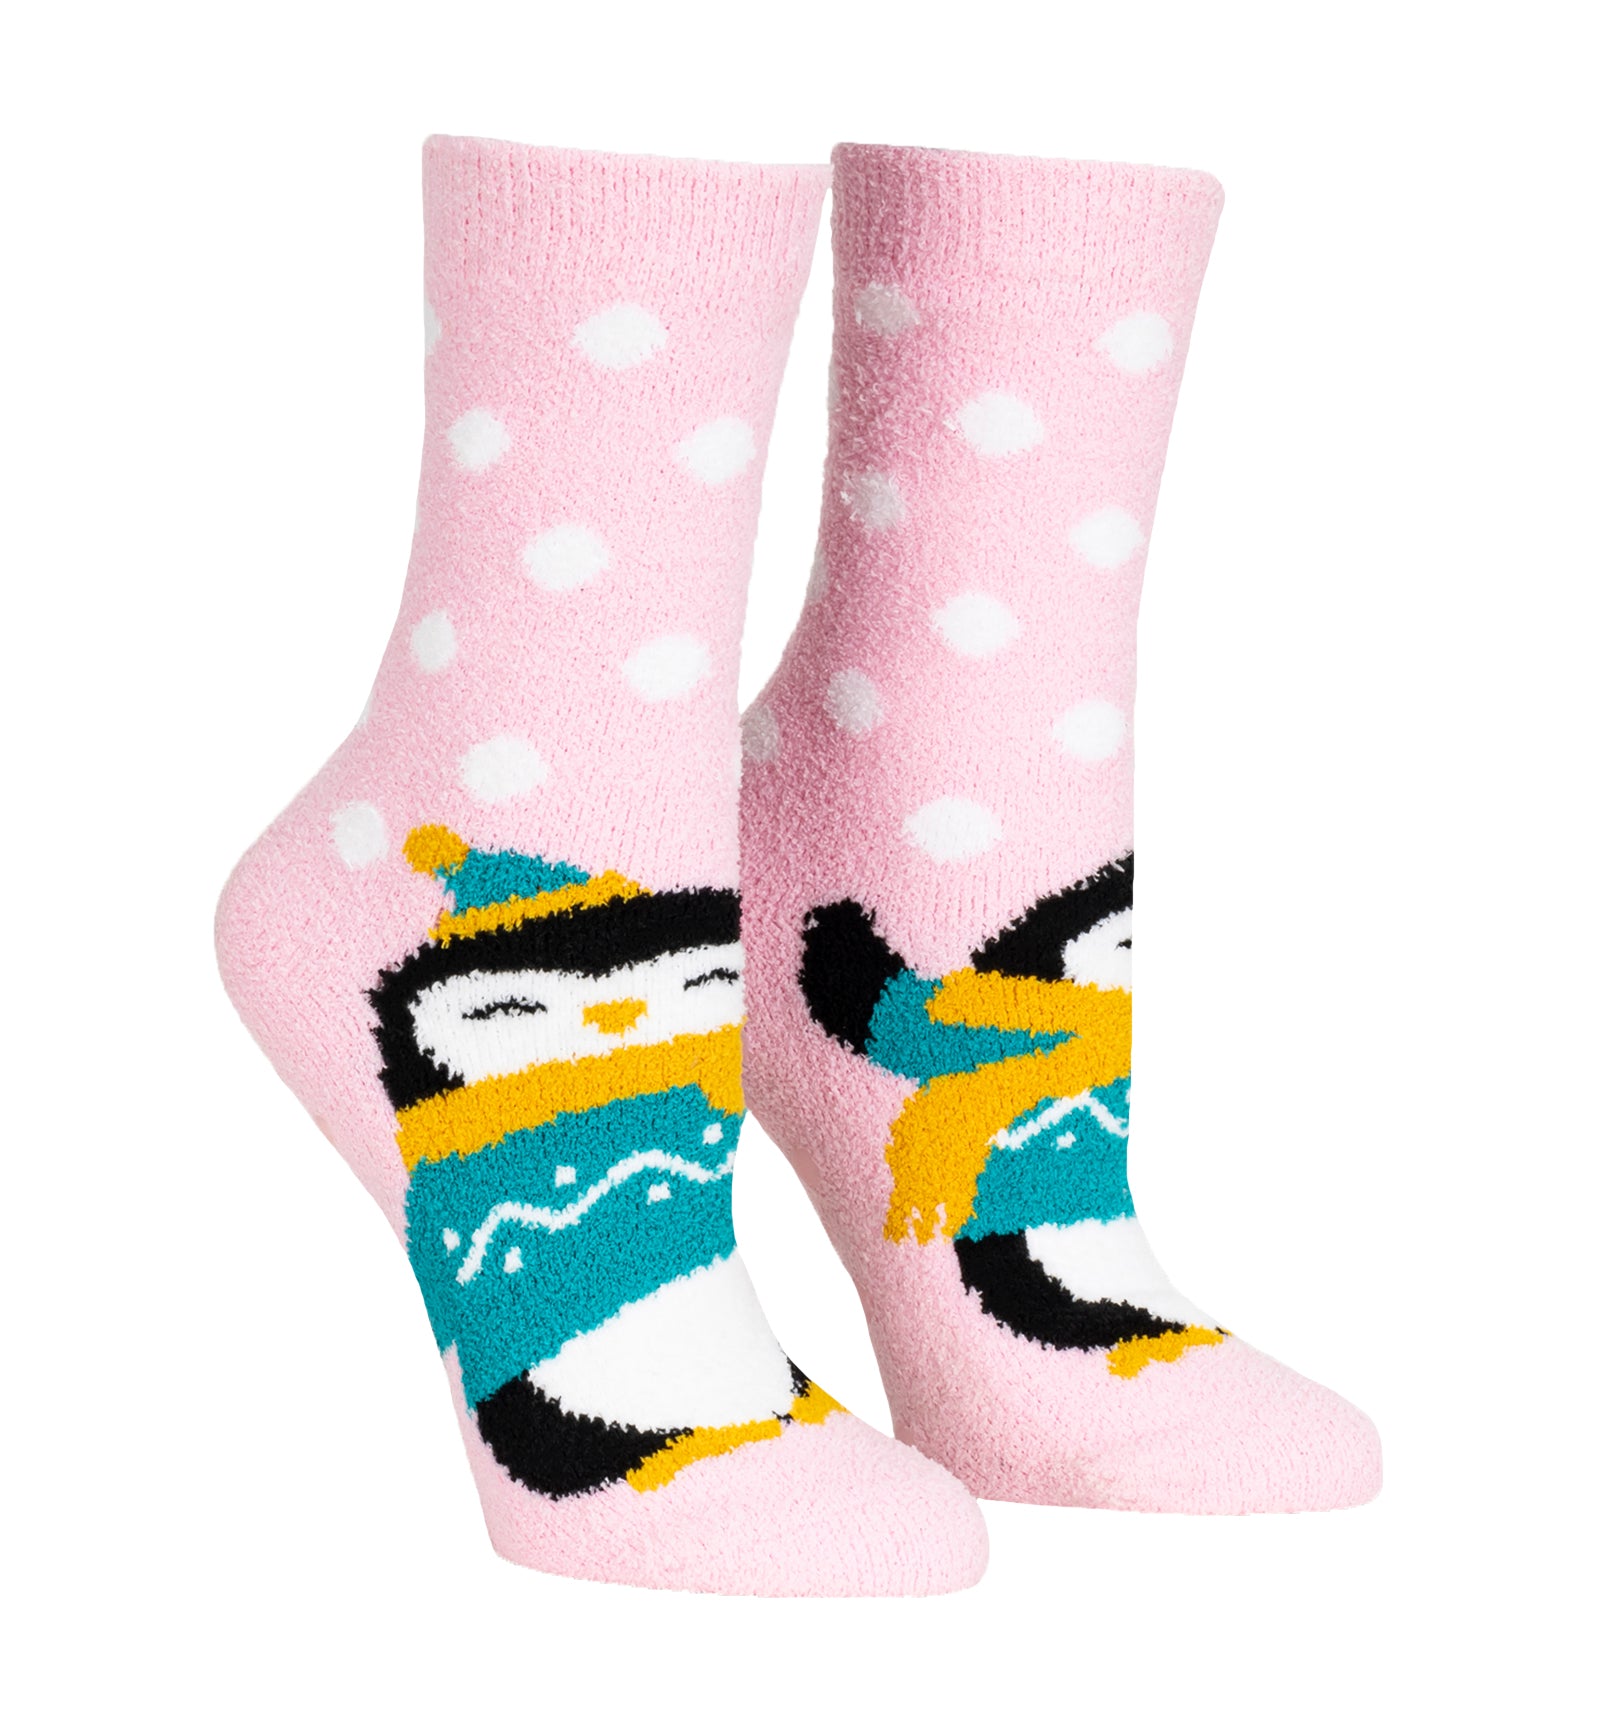 SOCK it to me Slipper Socks (CZ0014),Penguin Pair - Penguin Pair,One Size